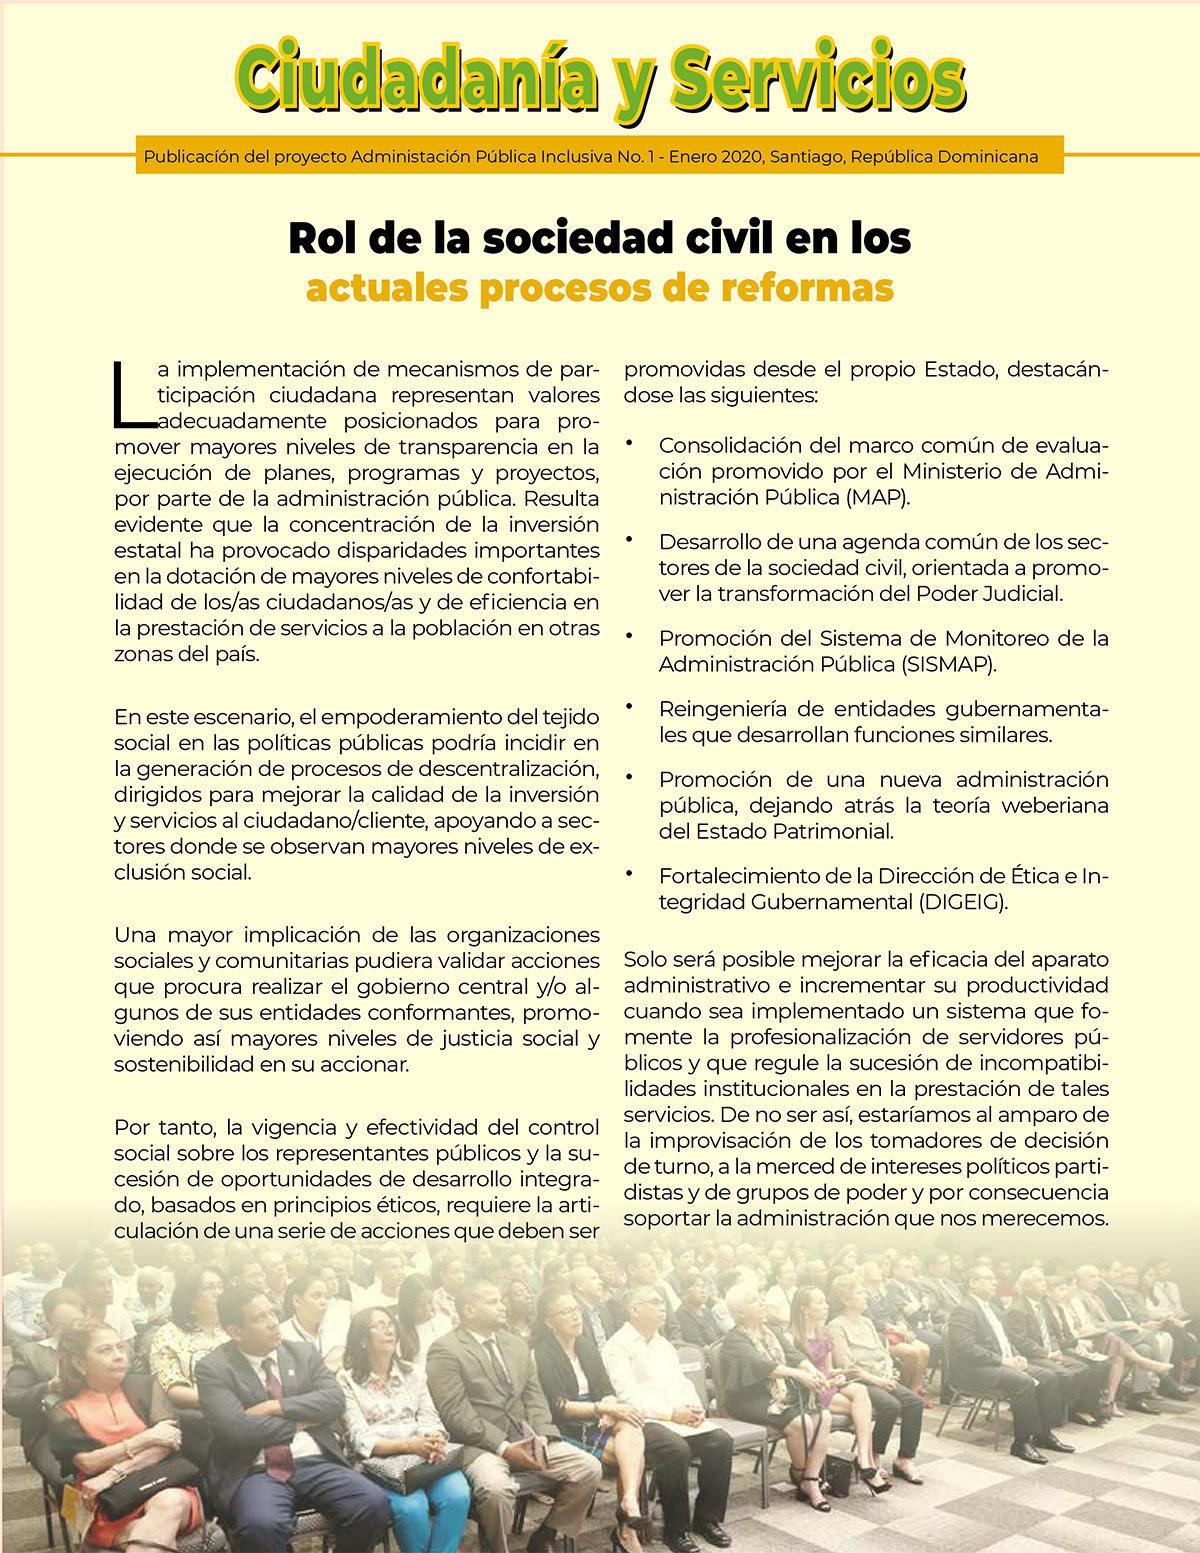 Revista Ciudadania y Servicios